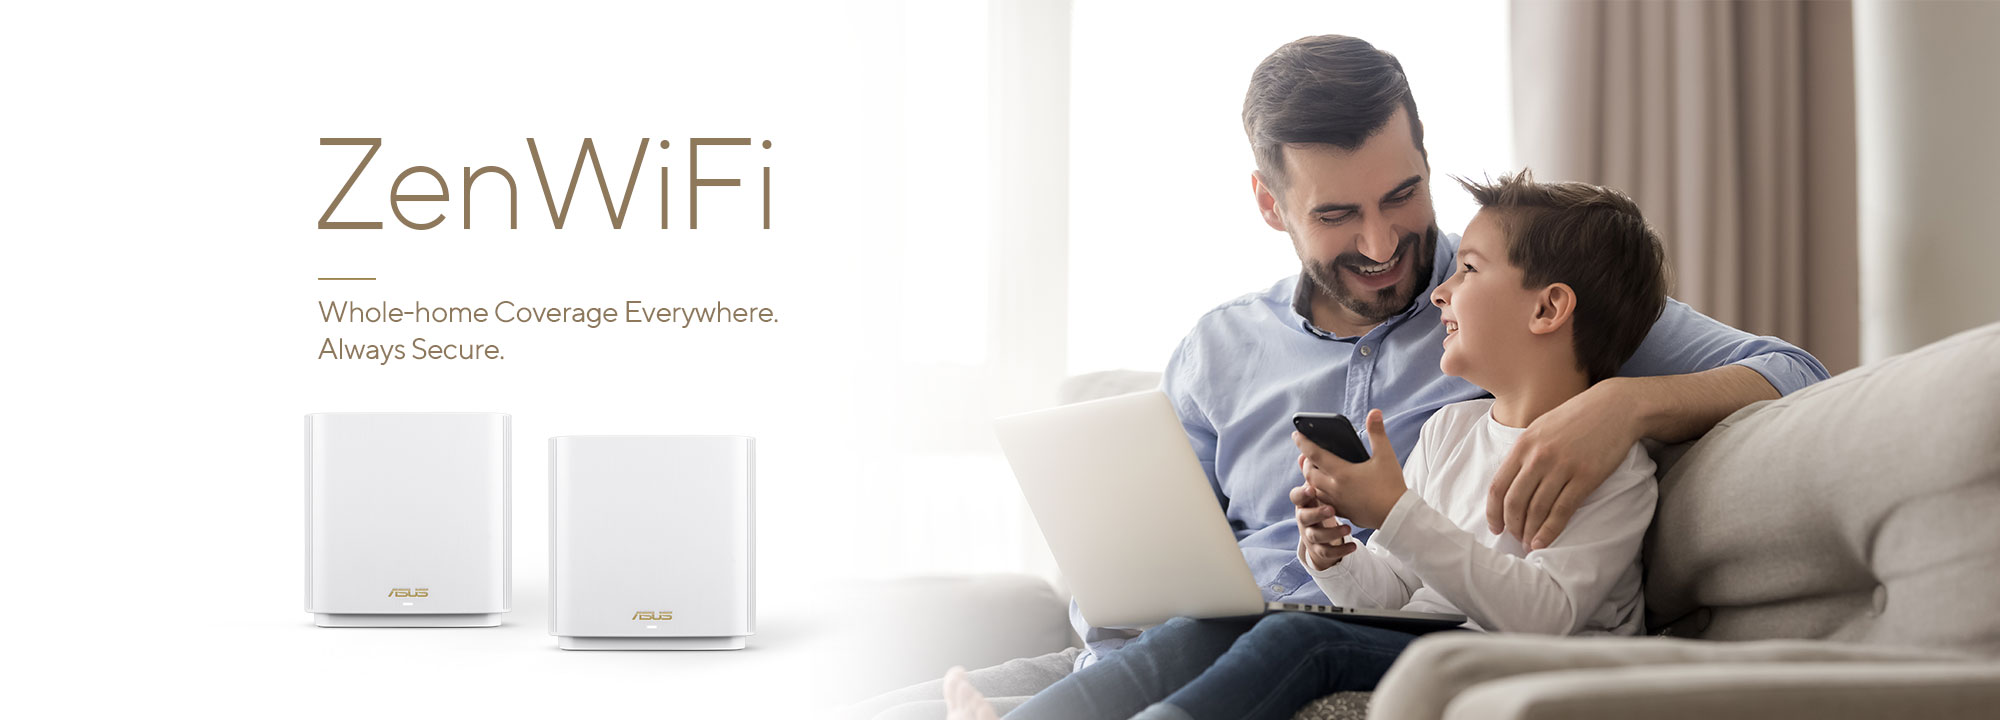 ASUS ZenWiFi ist das beste Mesh-WiFi-System für das ganze Haus, das stabile und schnelle WiFi-Verbindungen für alle Ihre Geräte bietet.